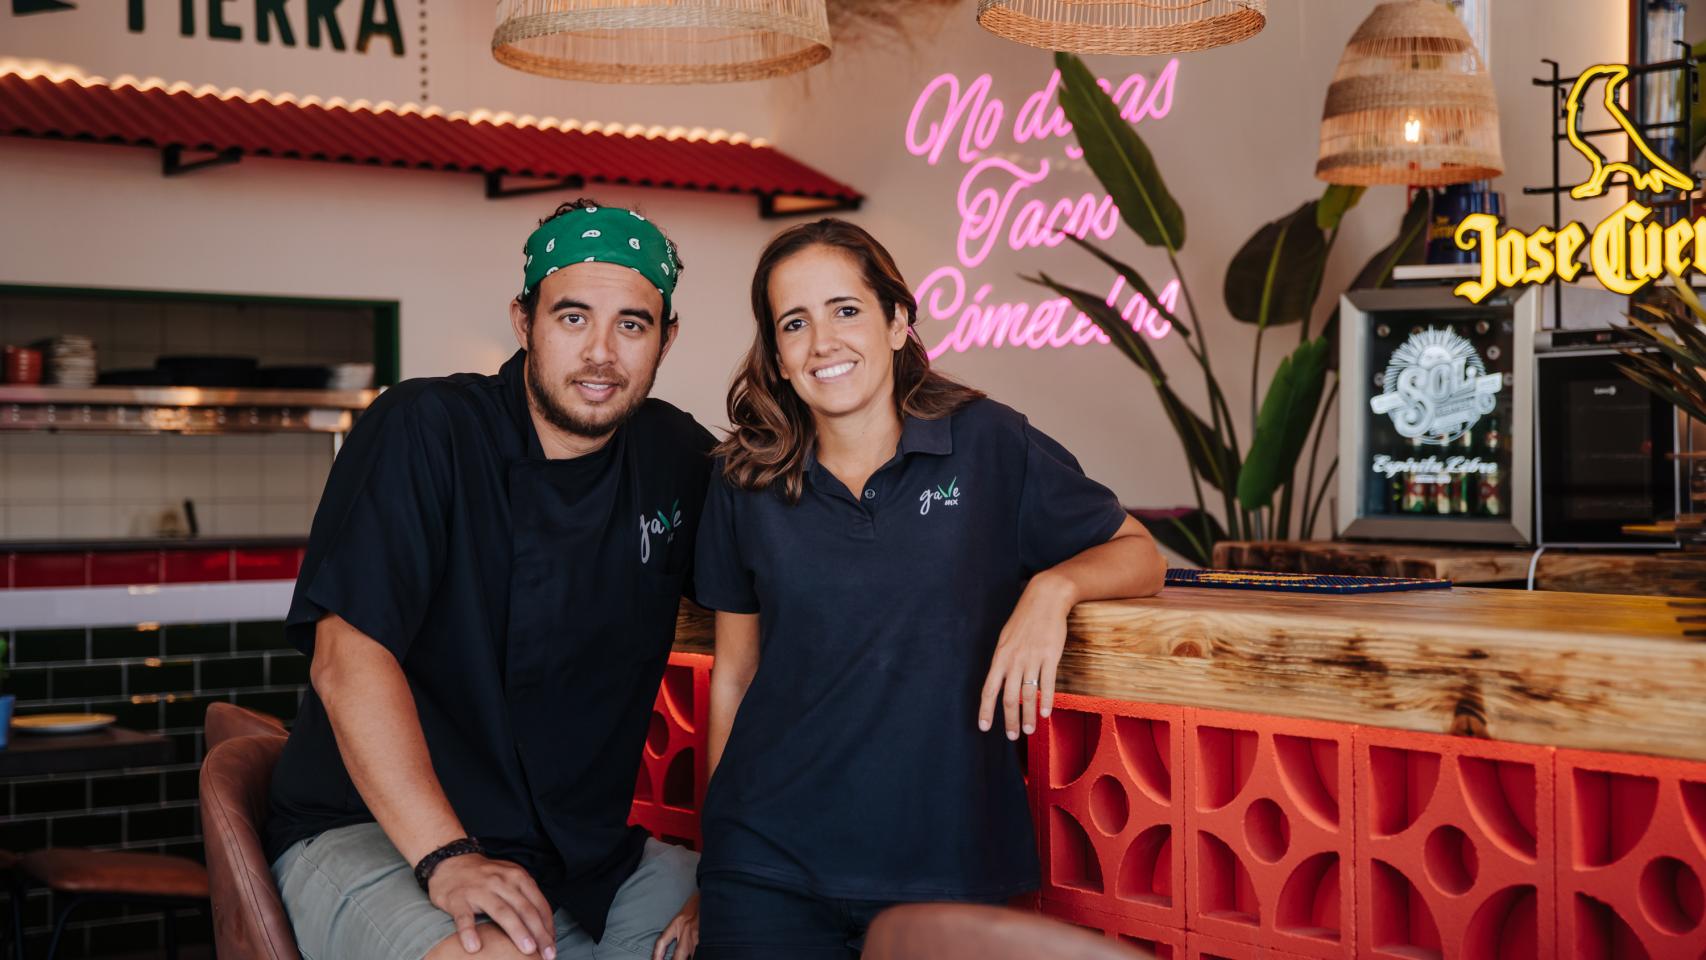 Yaiza Salmerón y Rogelio Corral en su nuevo restaurante de Madrid.